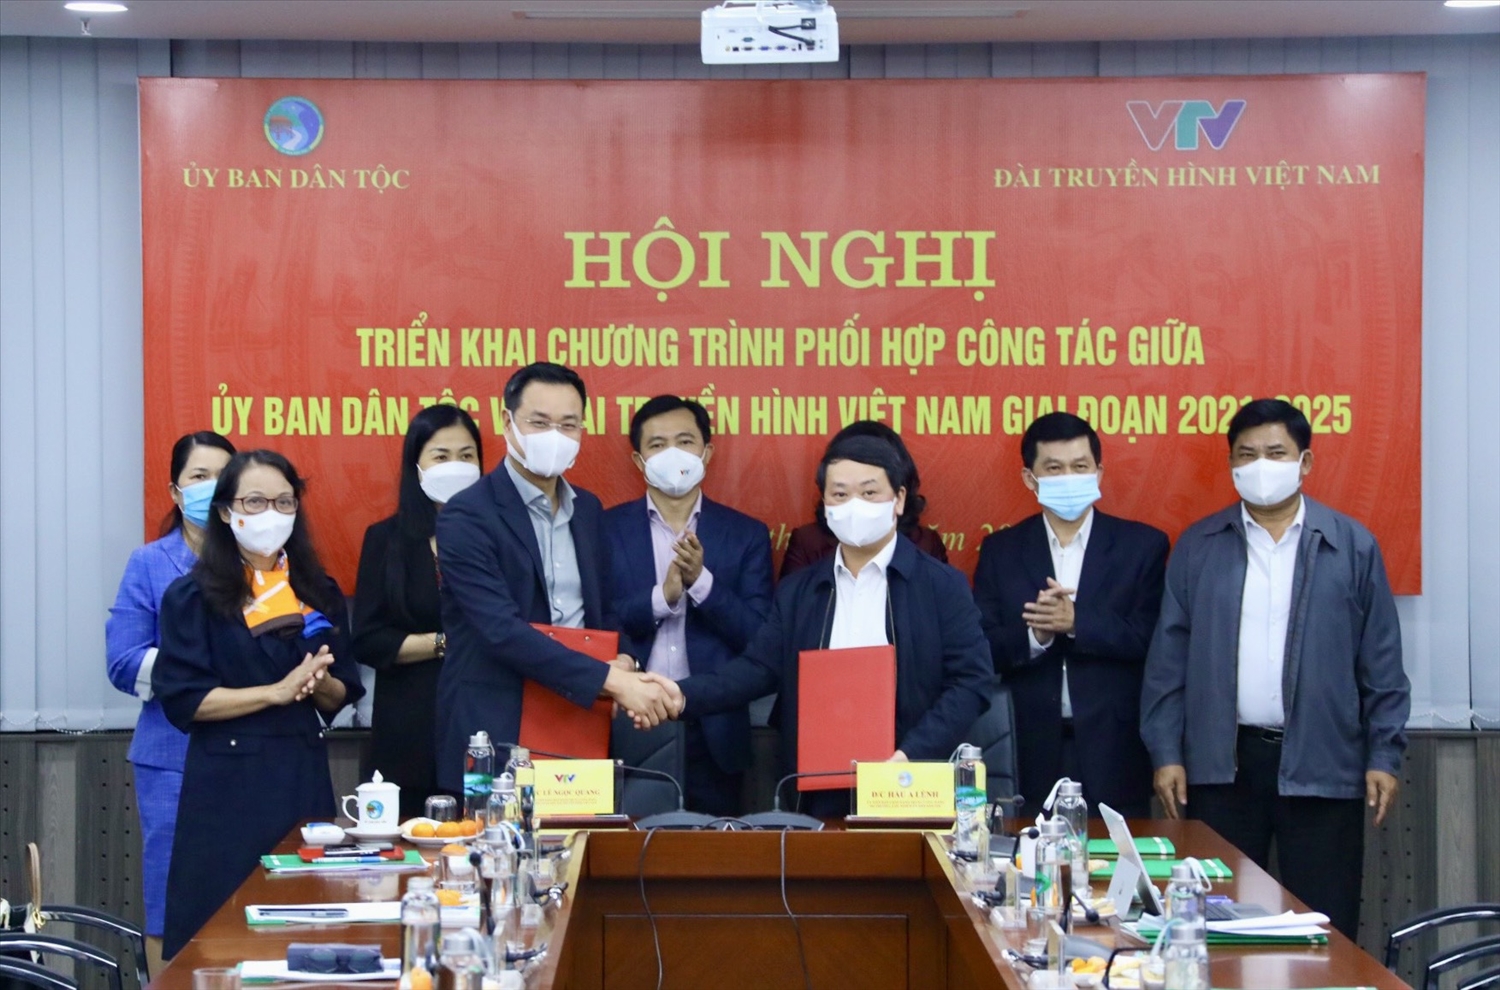 Bộ trưởng, Chủ nhiệm UBDT Hầu A Lềnh và Tổng Giám đốc Đài THVN Lê Ngọc Quang đã ký kết Chương trình phối hợp công tác giữa hai cơ quan giai đoạn 2021-2025